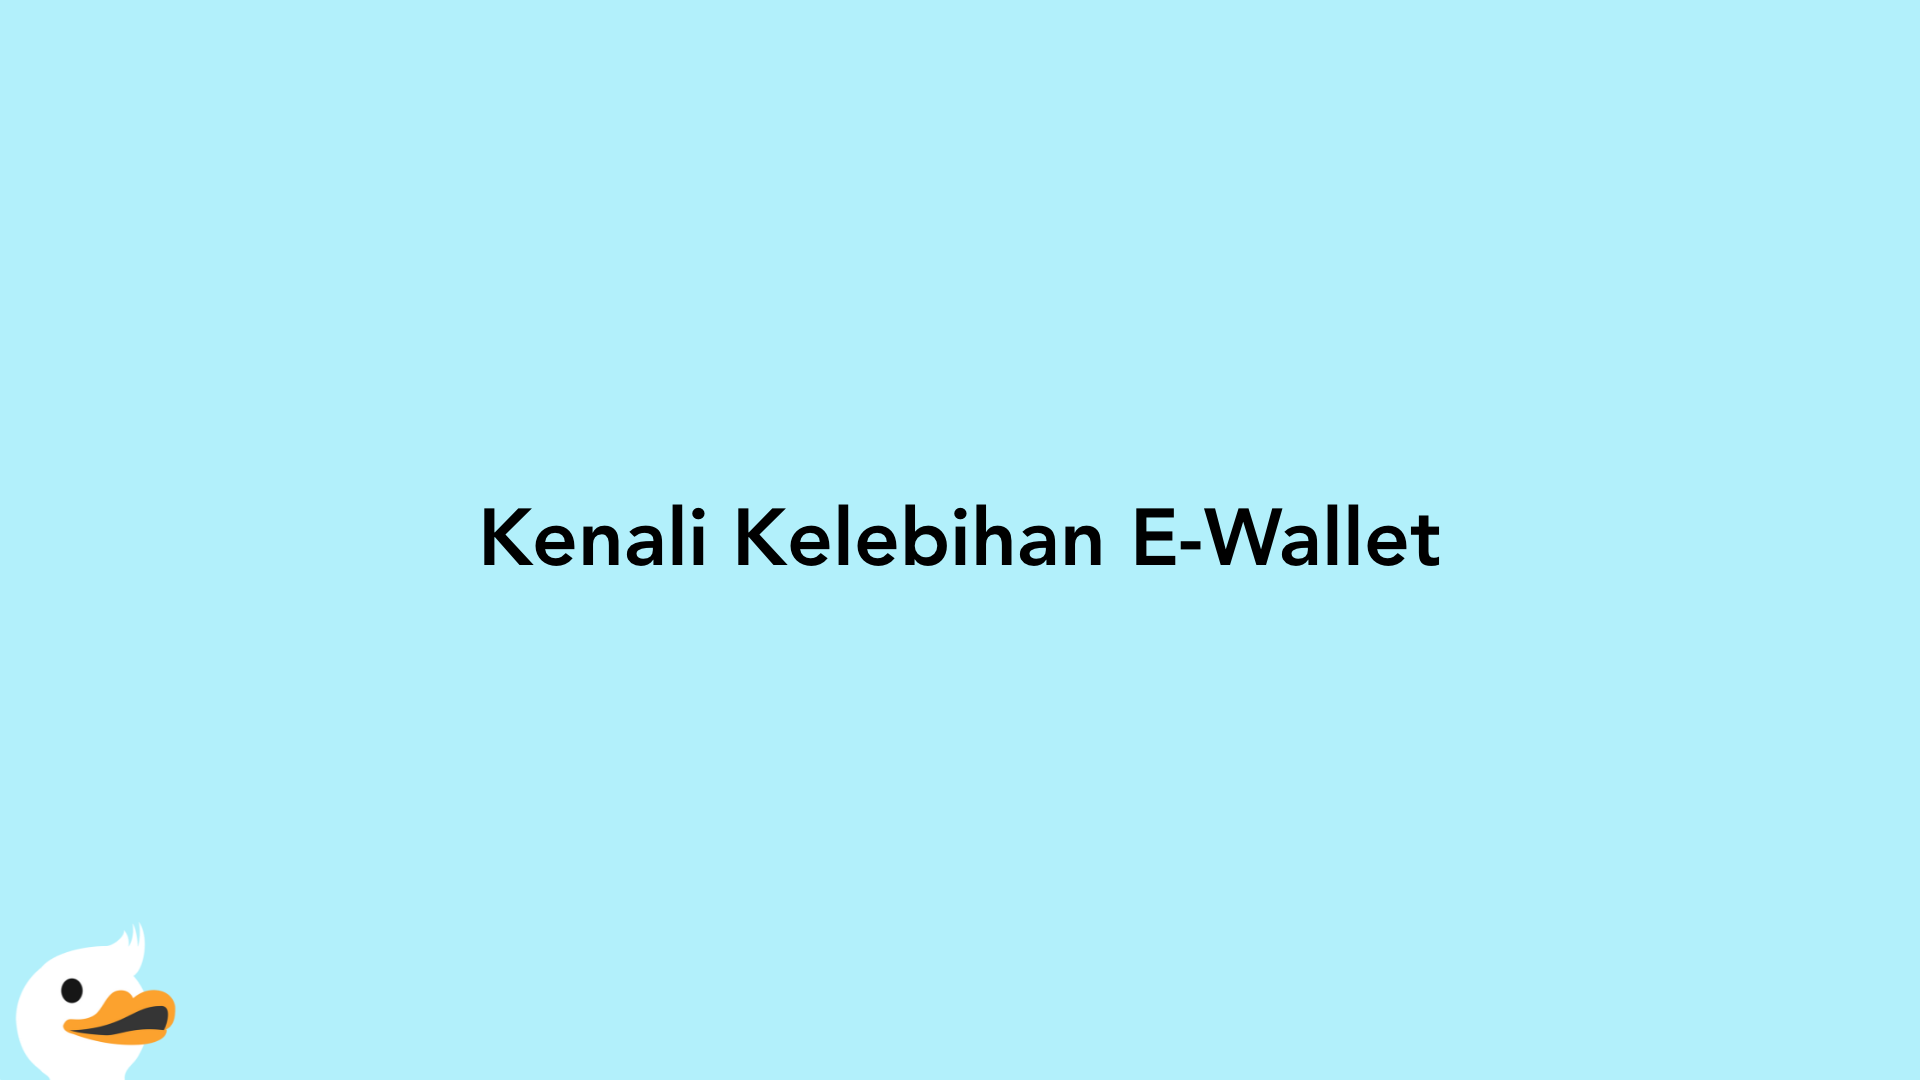 Kenali Kelebihan E-Wallet